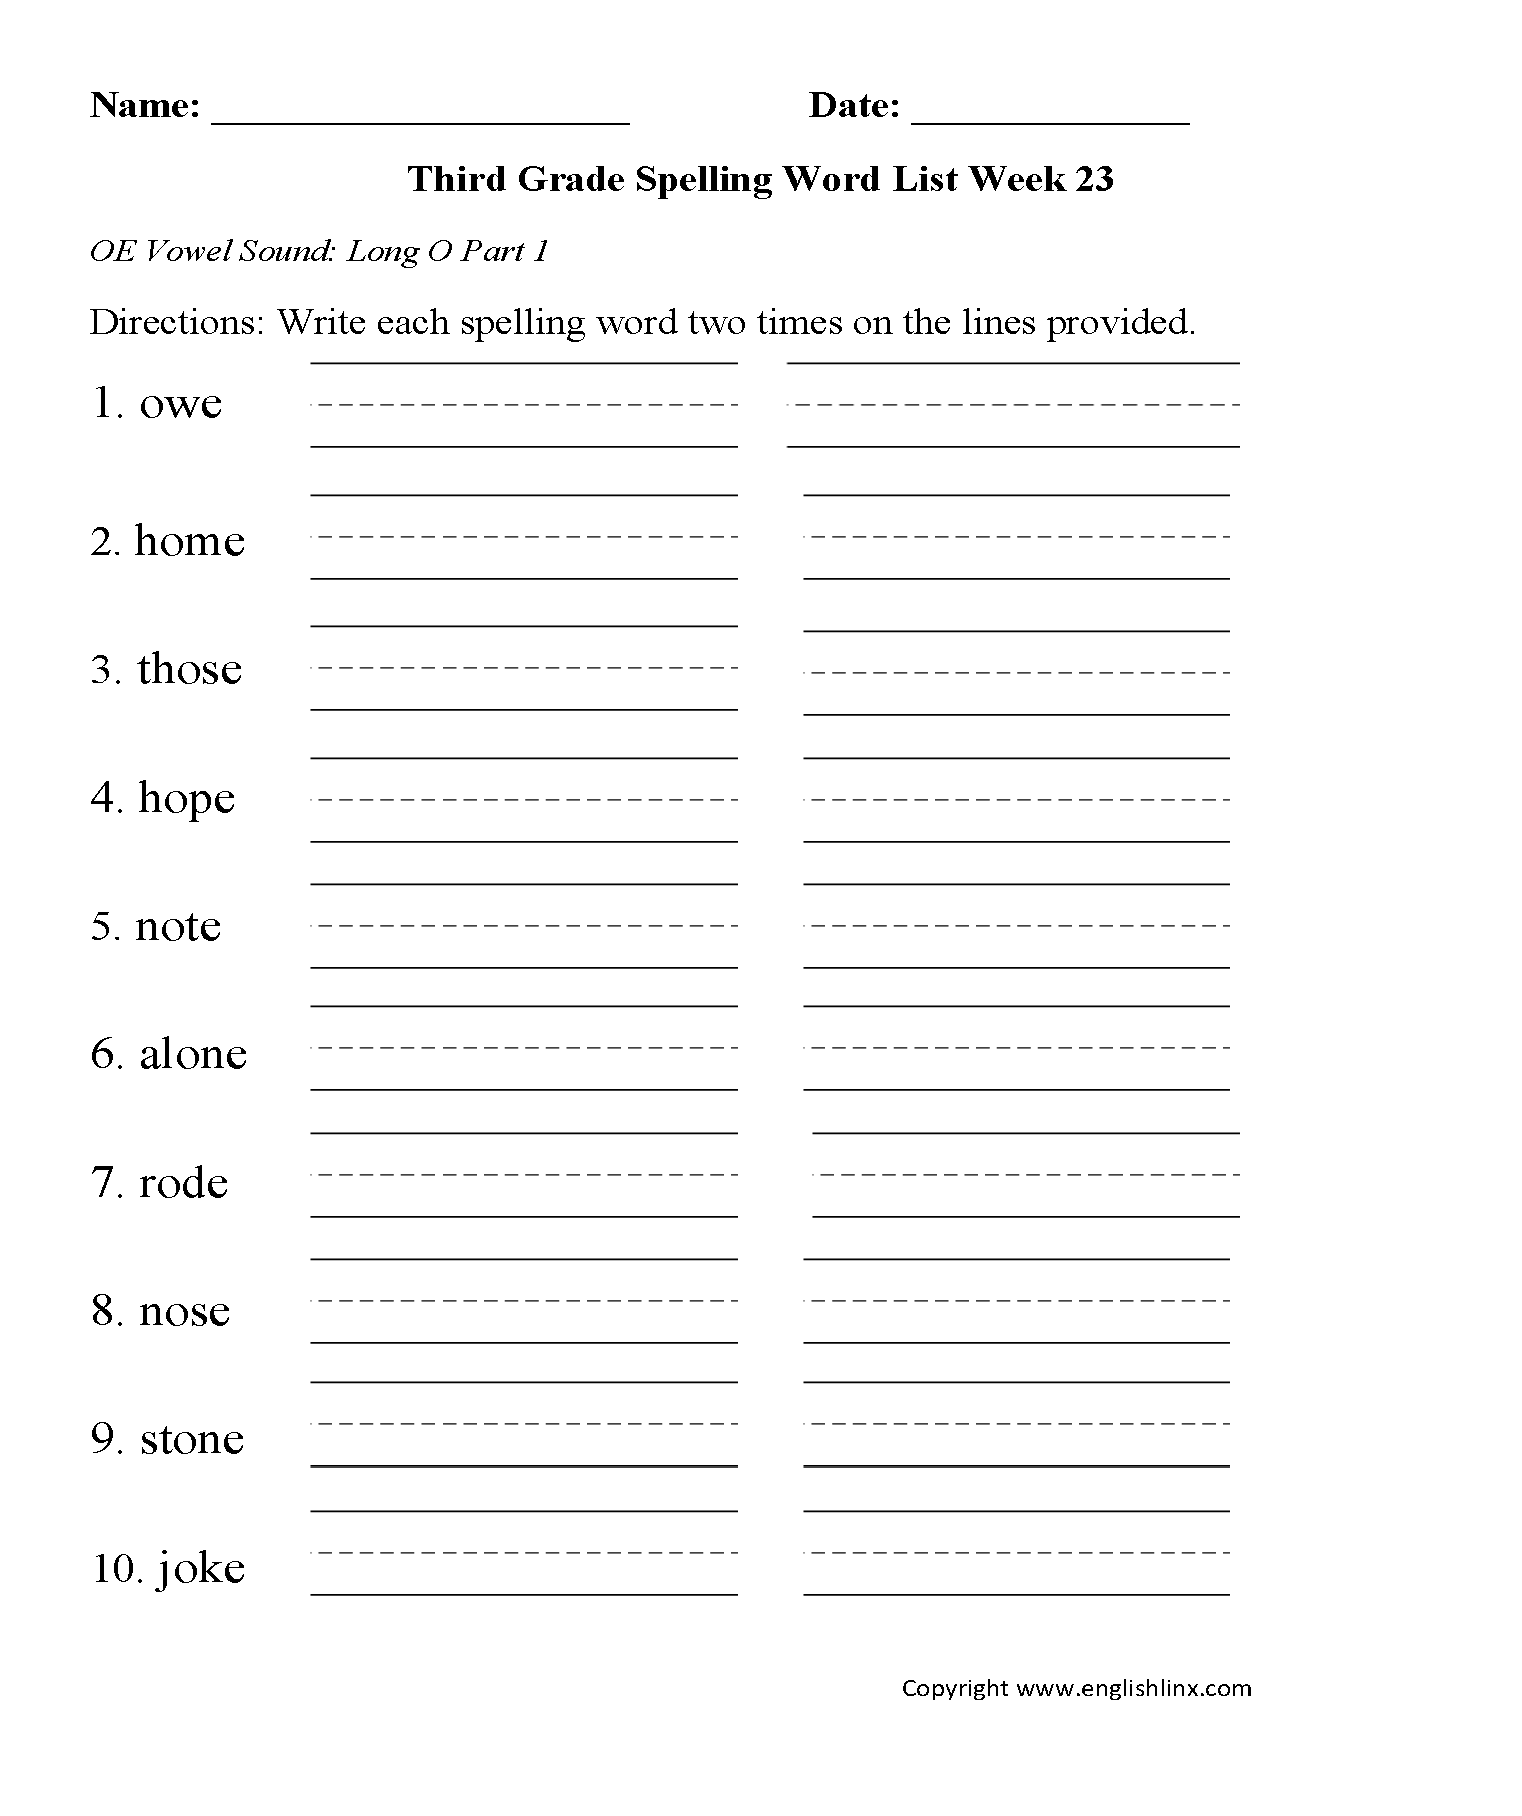 Spelling Worksheets | Third Grade Spelling Words Worksheets